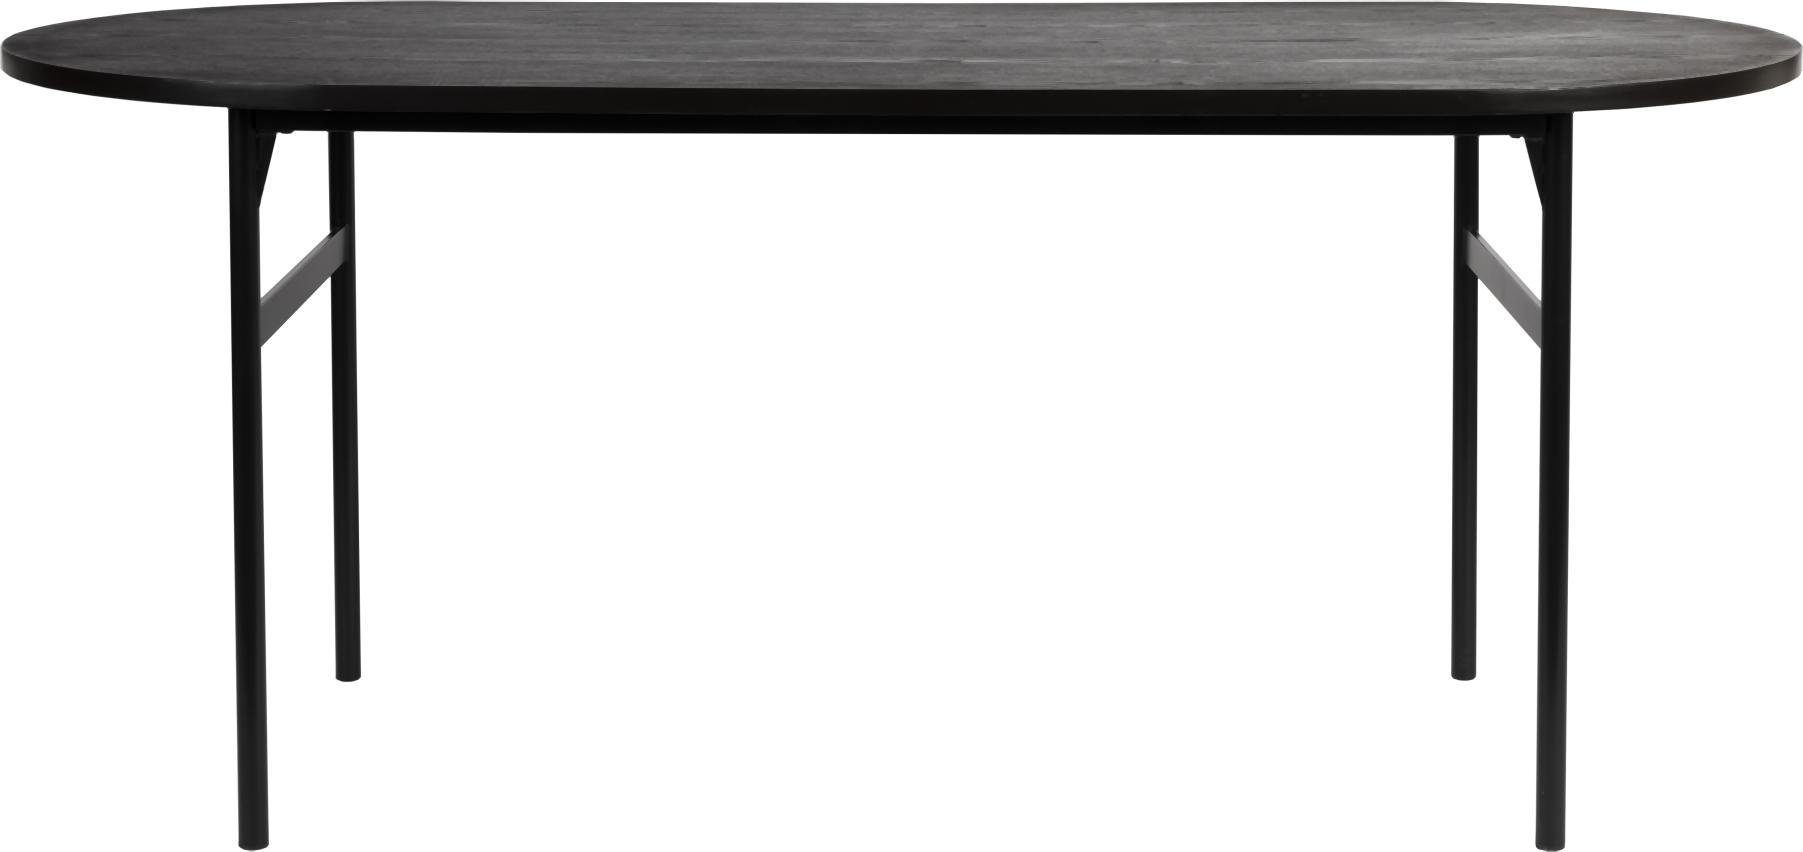 Trendmöbel24 Esstisch Esstisch MARCIO BLACK furniert 180 x 80 cm mit abgerundeter Platte | Esstische